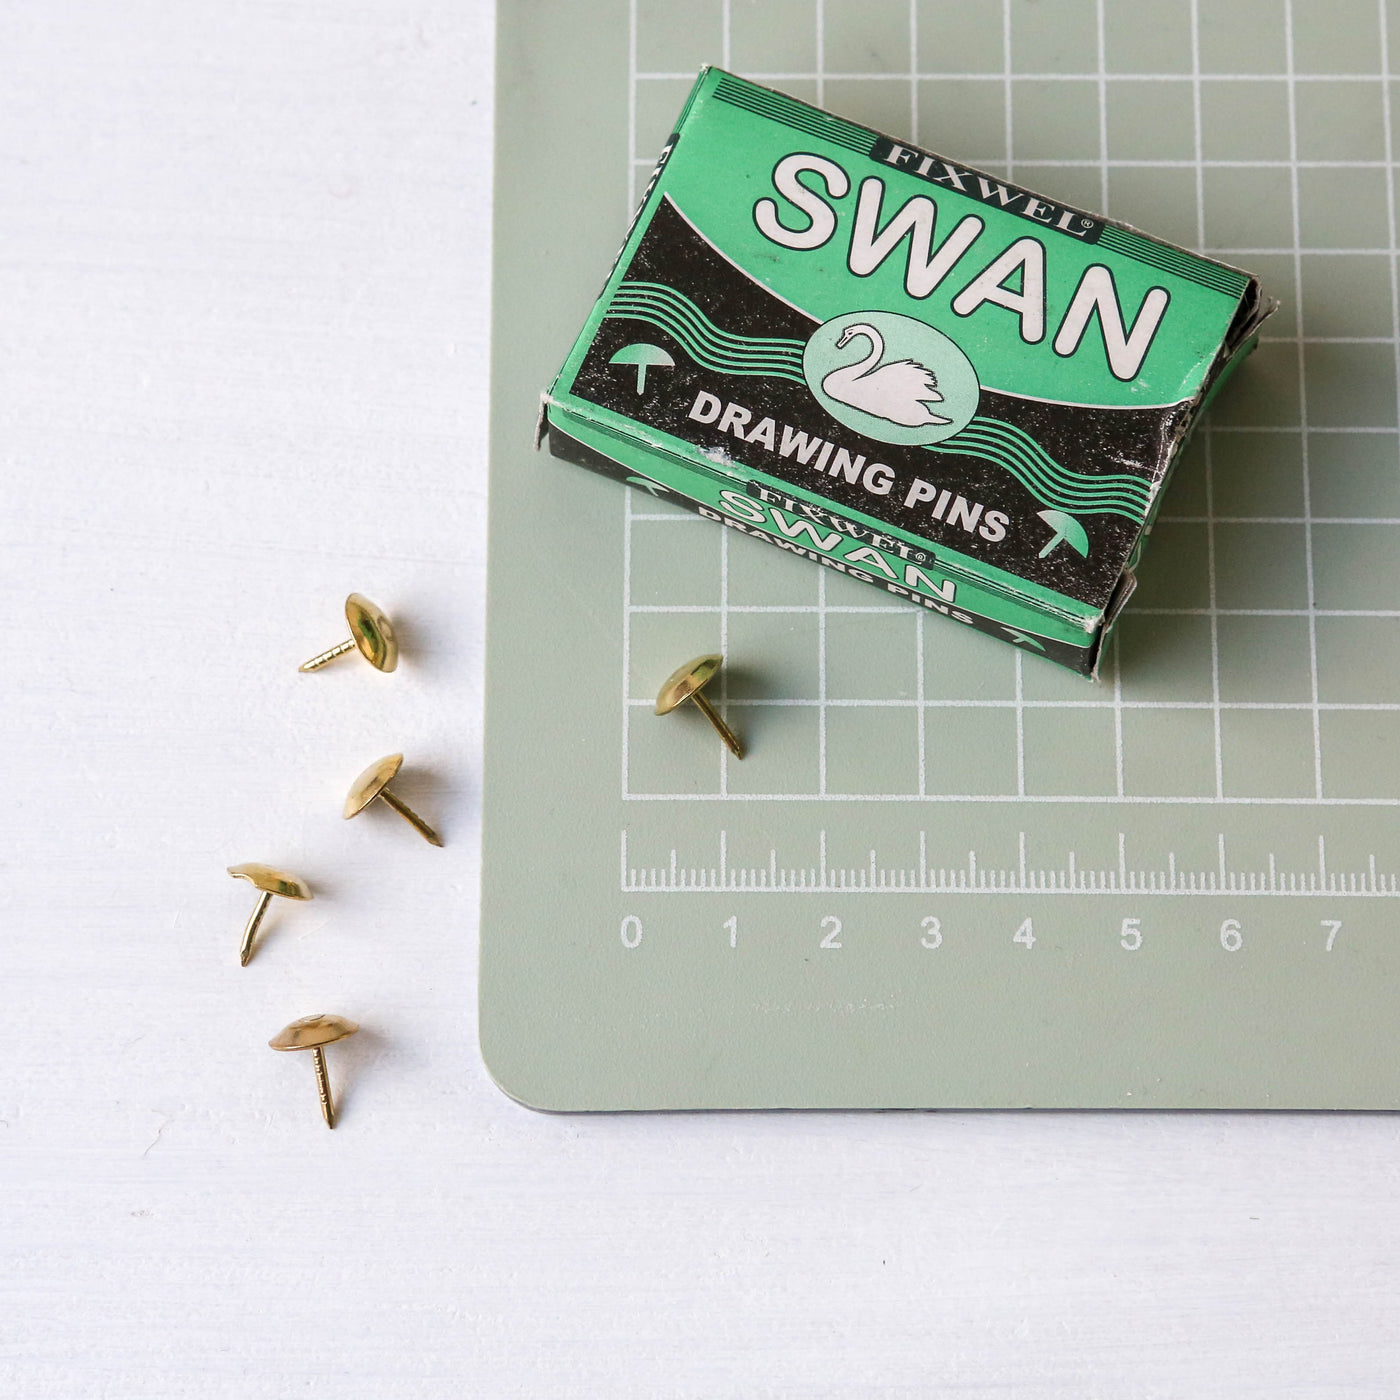 Swan Drawing Pins